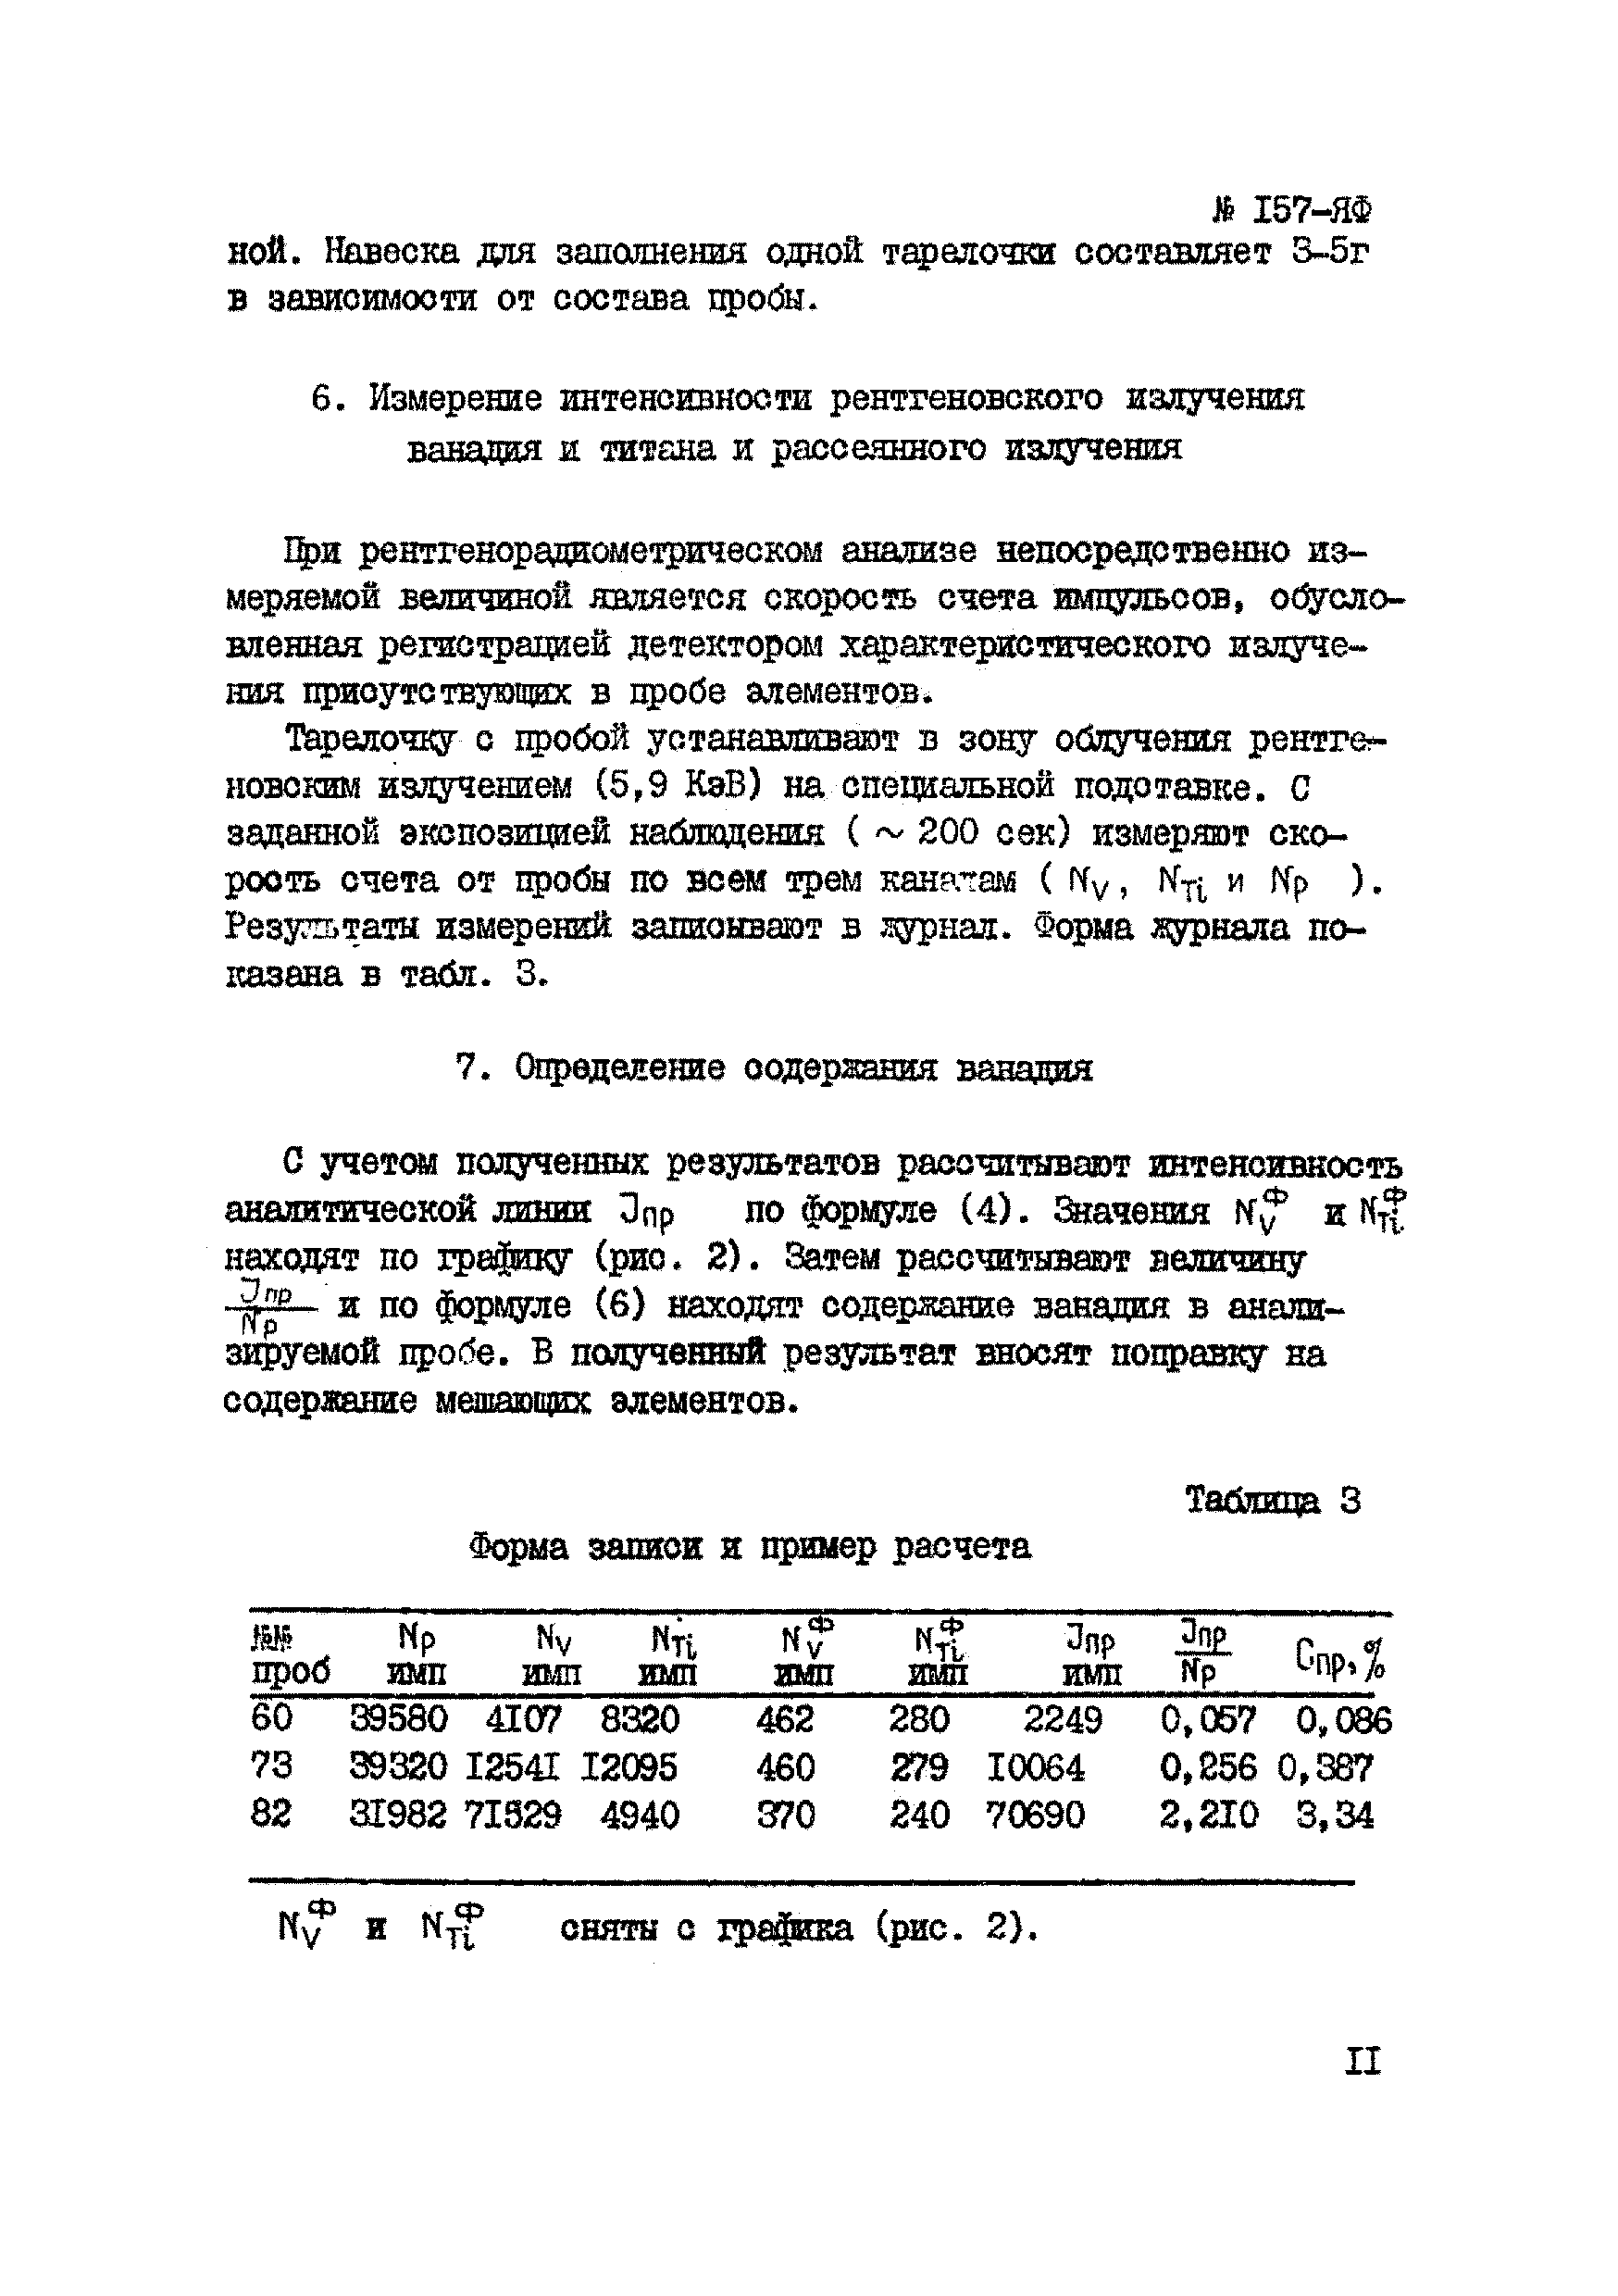 Инструкция НСАМ 157-ЯФ